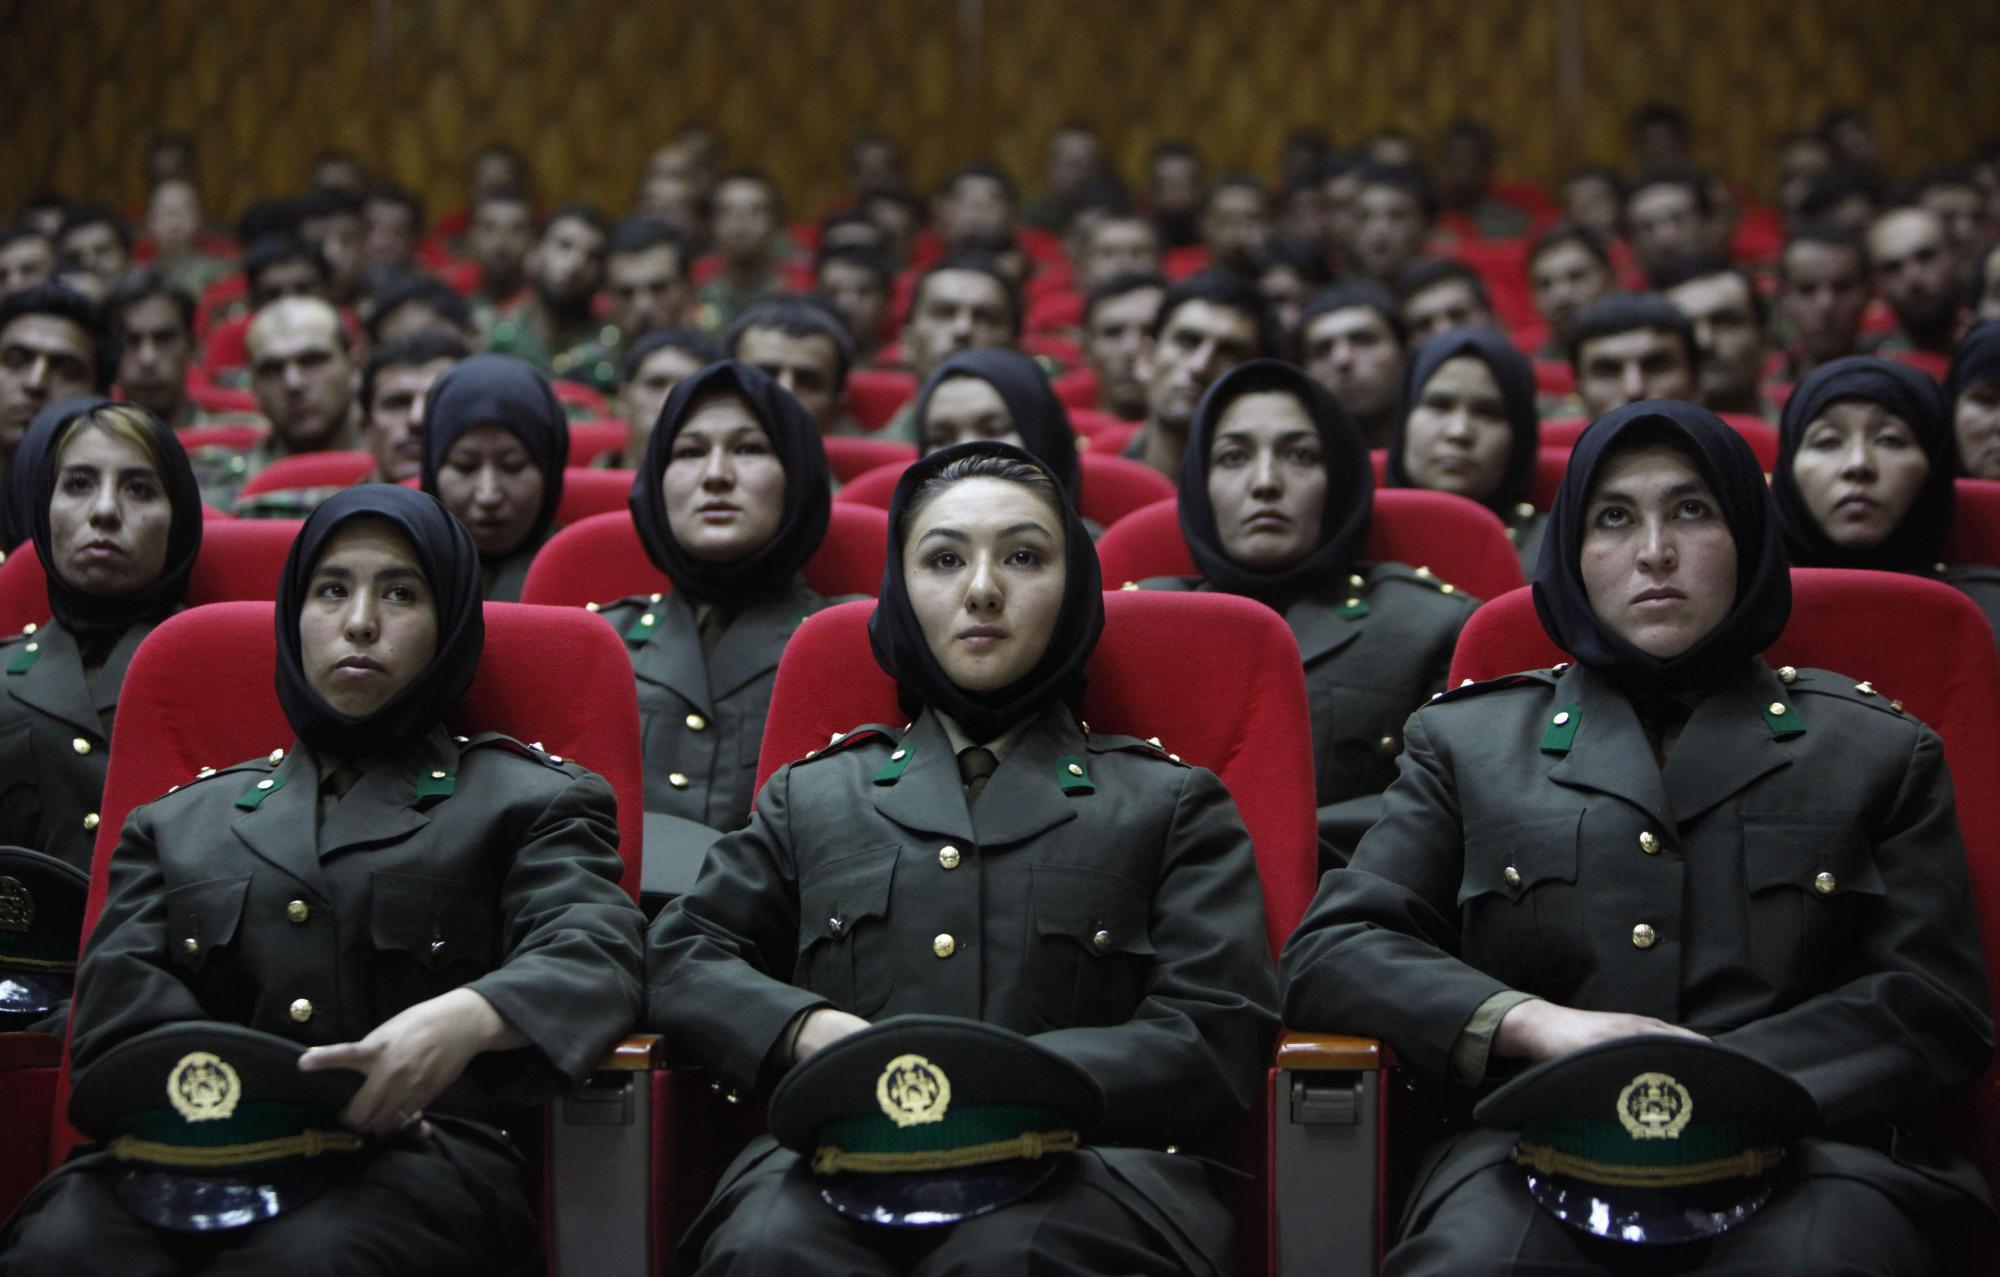 Oficiales femeninas recién entrenadas del Ejército Nacional Afgano se sientan en los asientos delanteros mientras un nuevo grupo de oficiales asiste a su ceremonia de graduación en el centro de entrenamiento del Ejército Nacional en Kabul, Afganistán, el jueves 23 de septiembre de 2010 (AP Photo / Gemunu Amarasinghe)